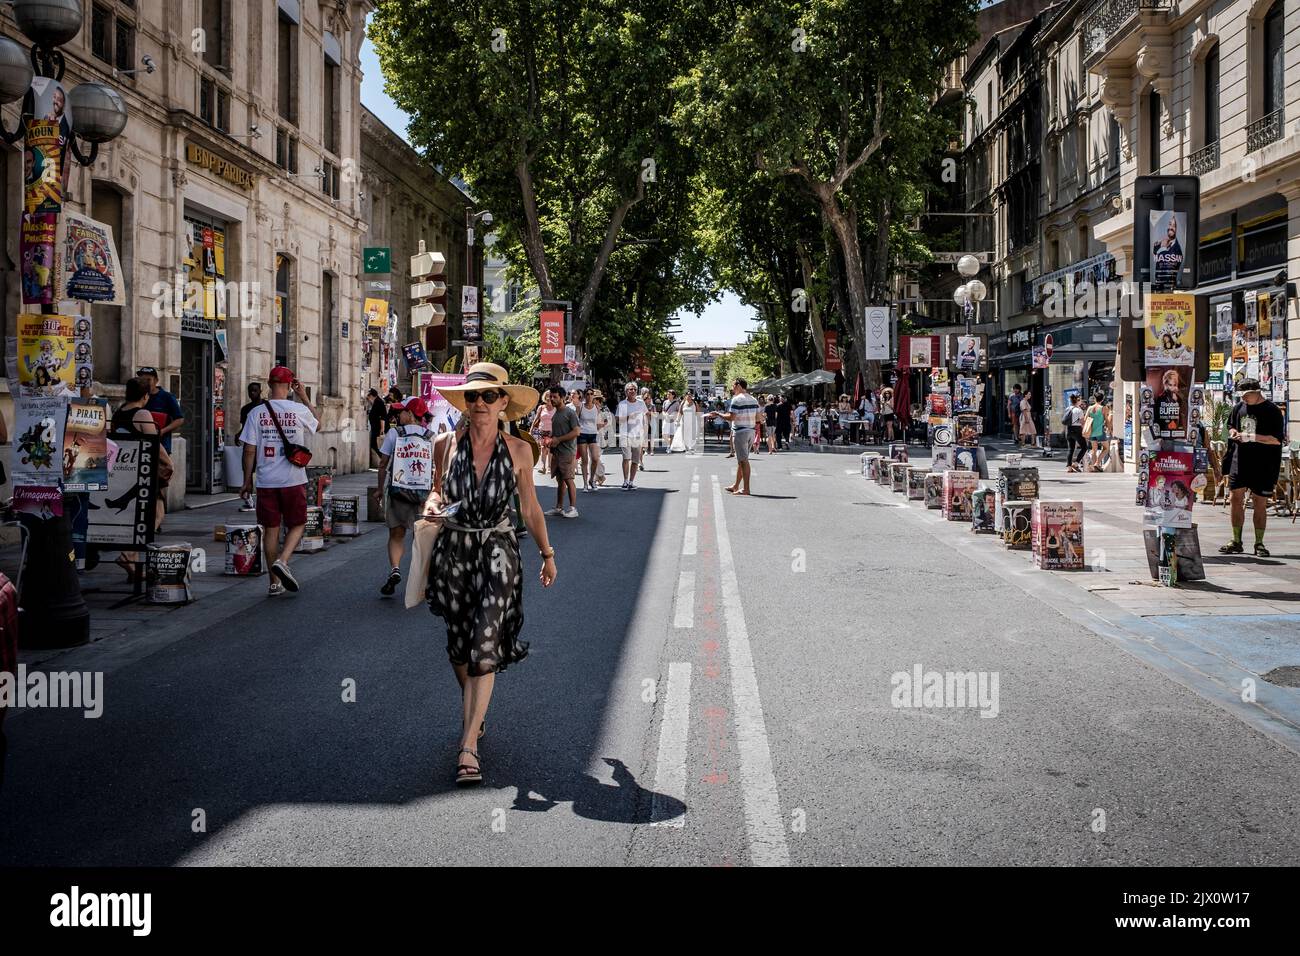 Città vecchia strada piena di gente artisti turisti poster d'arte durante il Festival di Avignone Off. Il Festival di Avignone è un festival annuale di arte che si tiene ad Avignone Foto Stock